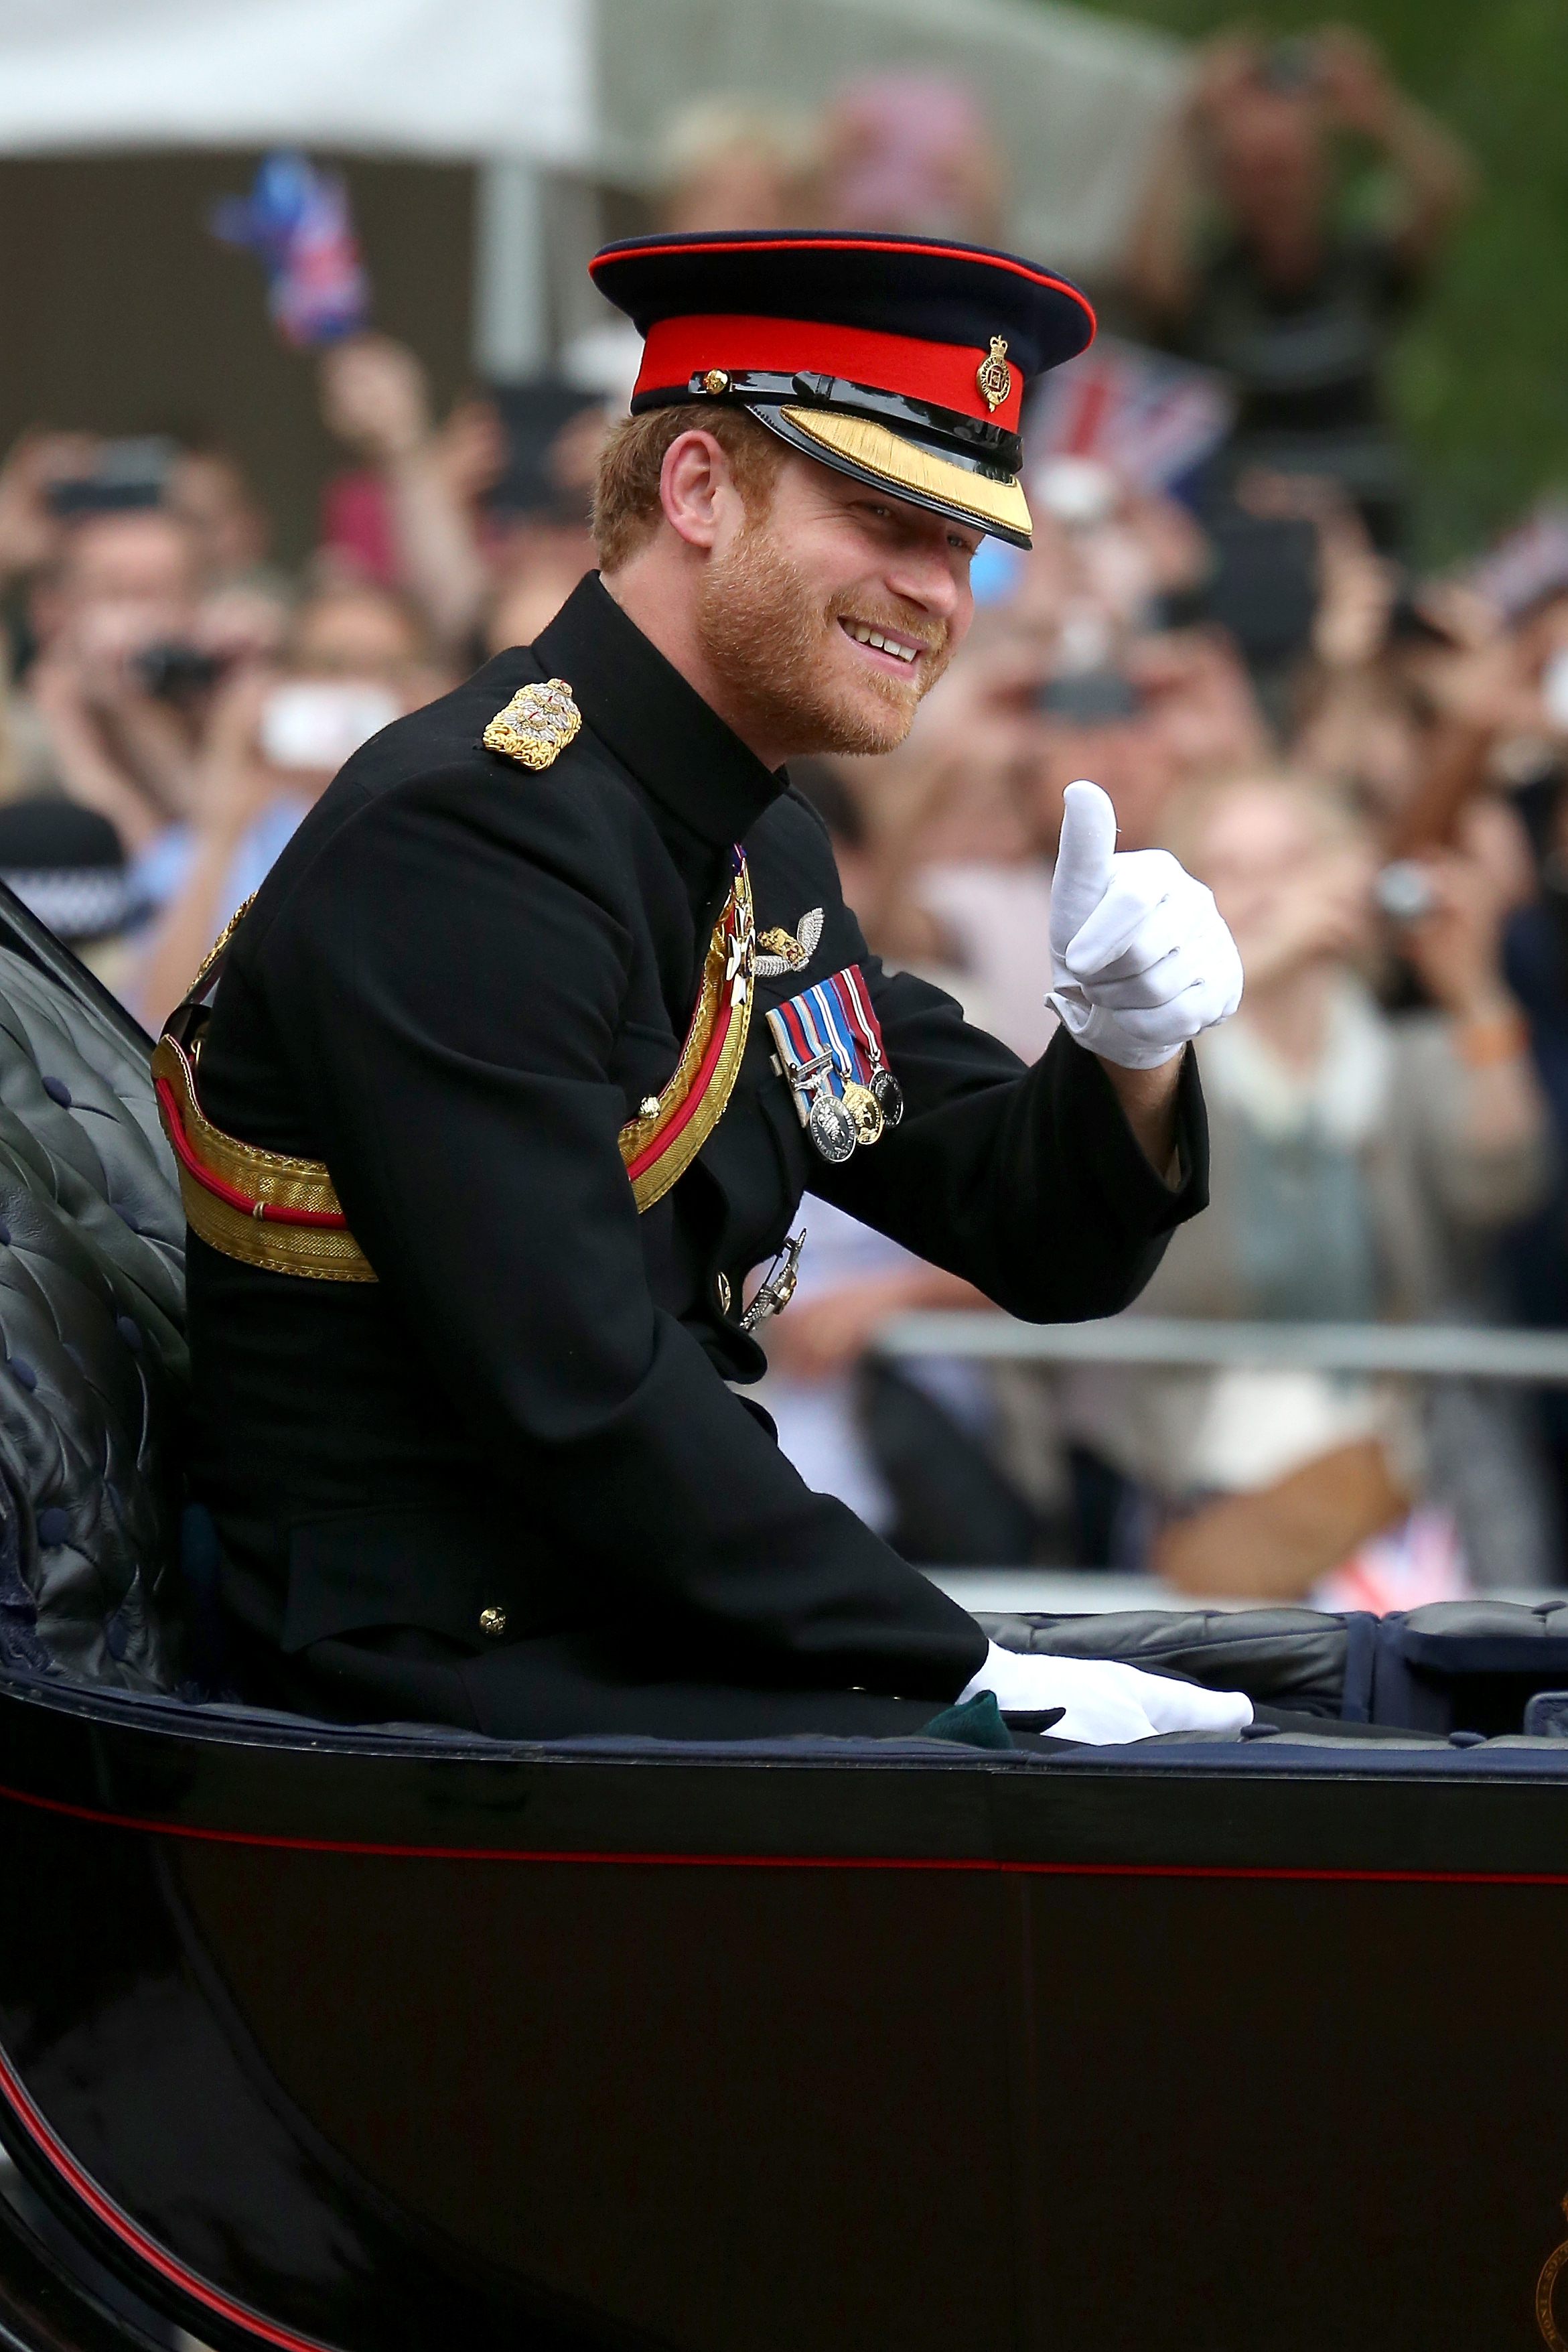 Le duc, photographié ici lors de l'événement en 2016, a des liens personnels en raison de son passé militaire